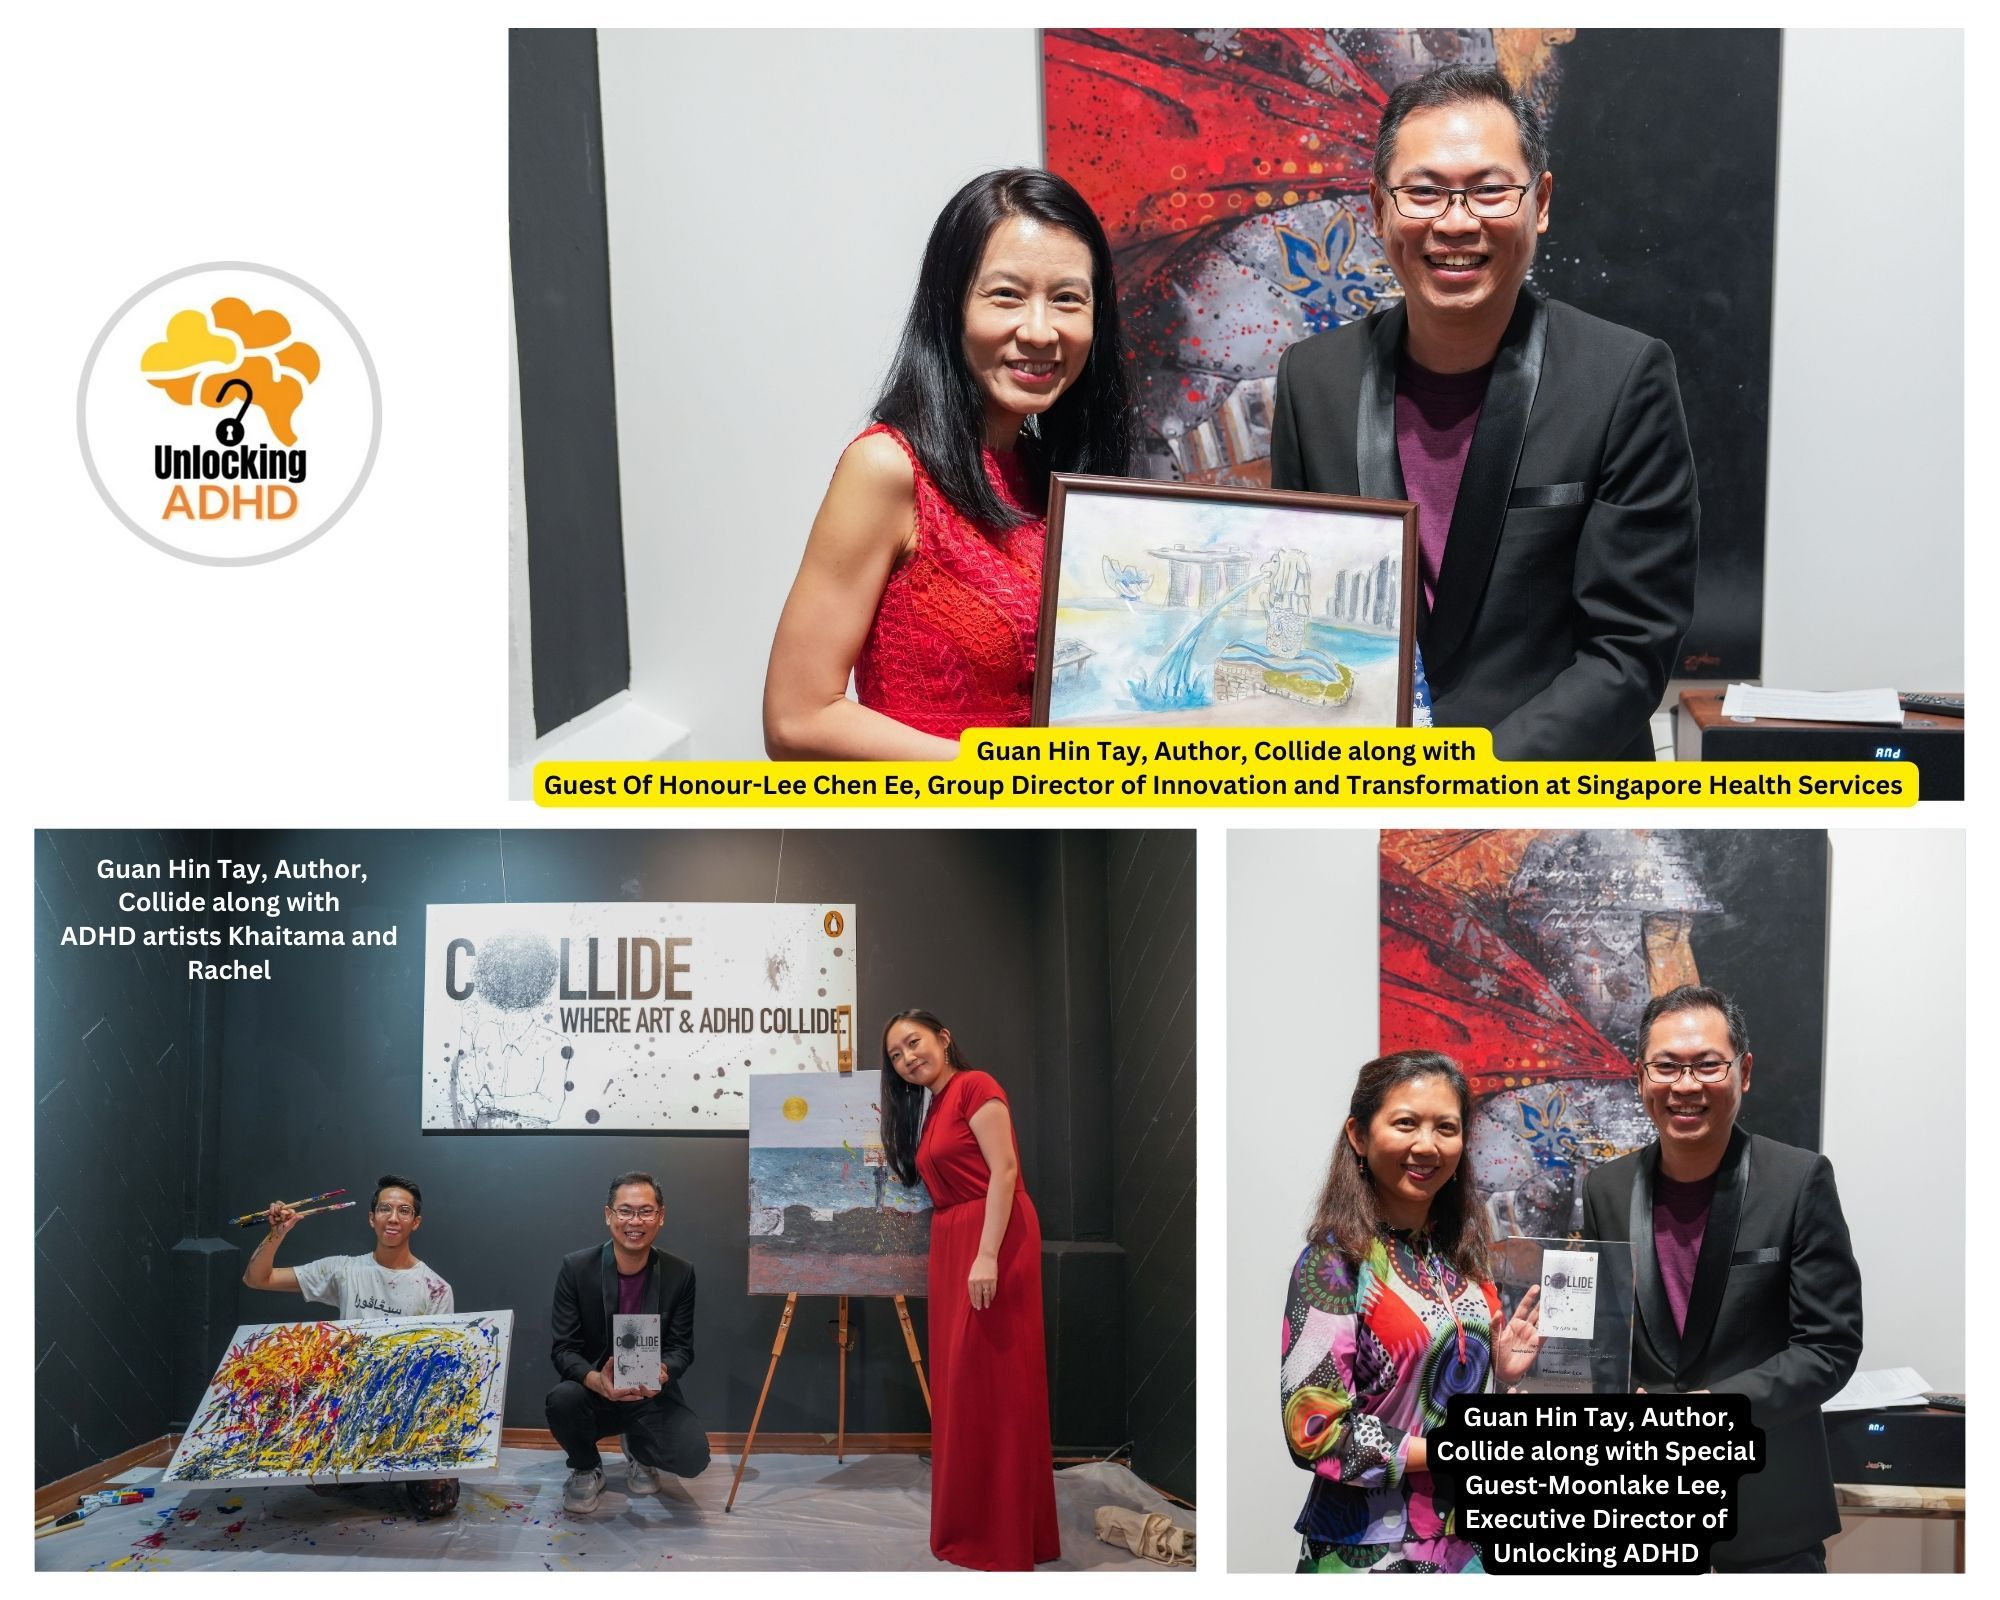 สิงคโปร์เปิดตัวกิจกรรมวาดภาพสดครั้งแรกโดยศิลปิน ADHD ซึ่งได้รับแรงบันดาลใจจาก 'Collide' โดย Tay Guan Hin"